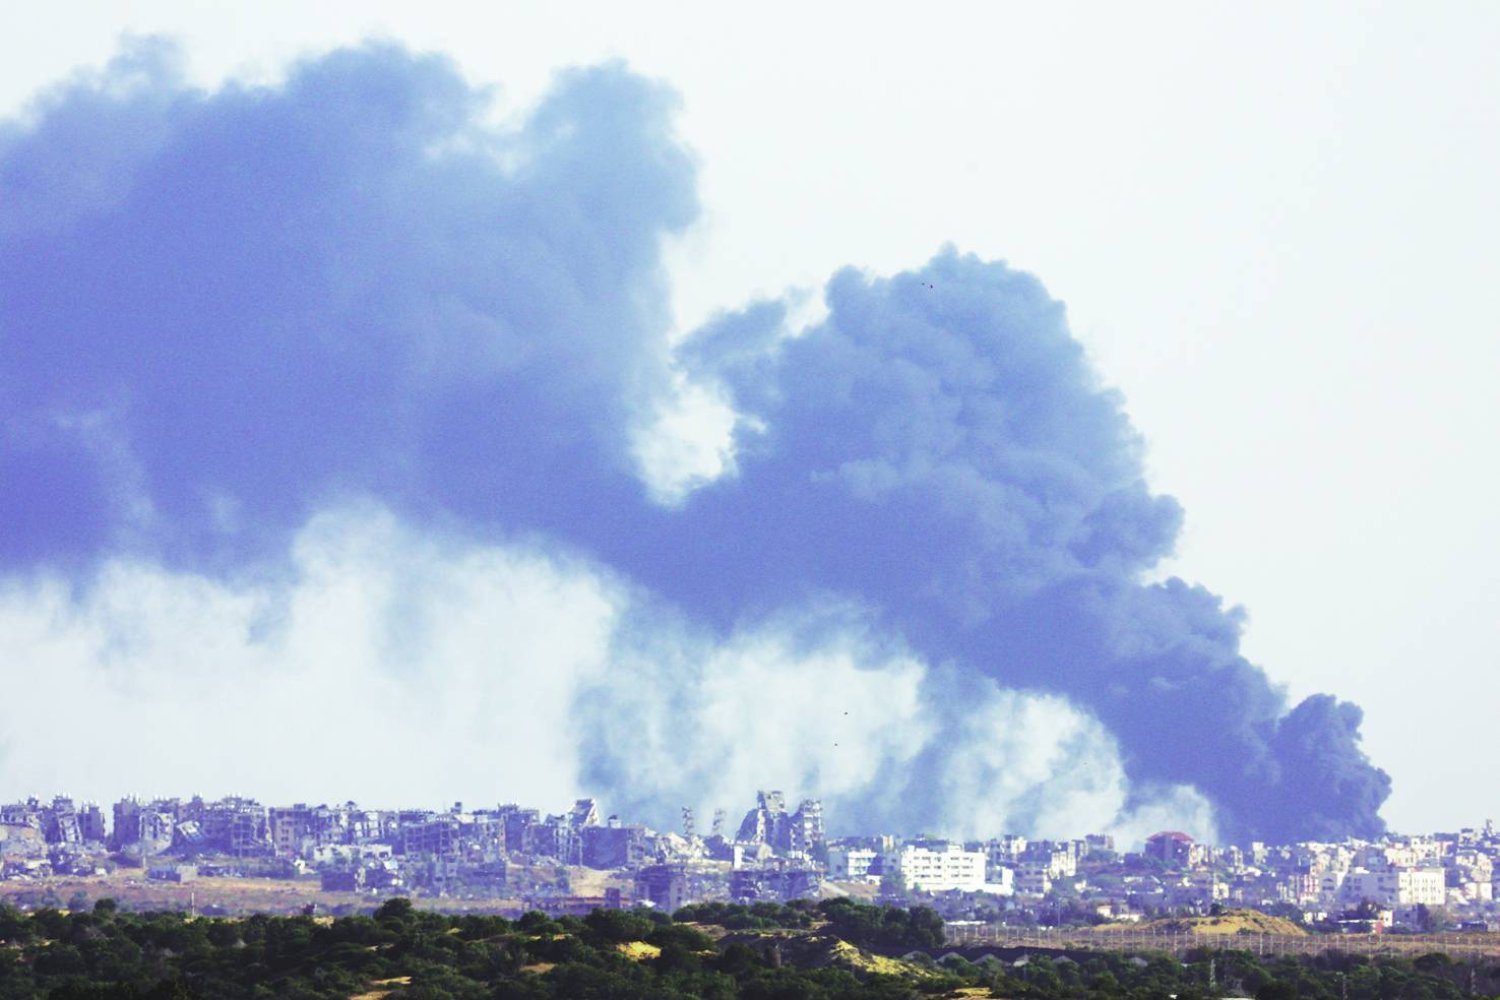 
أعمدة الدخان تتصاعد بعد انفجار في شمال غزة أمس (رويترز)